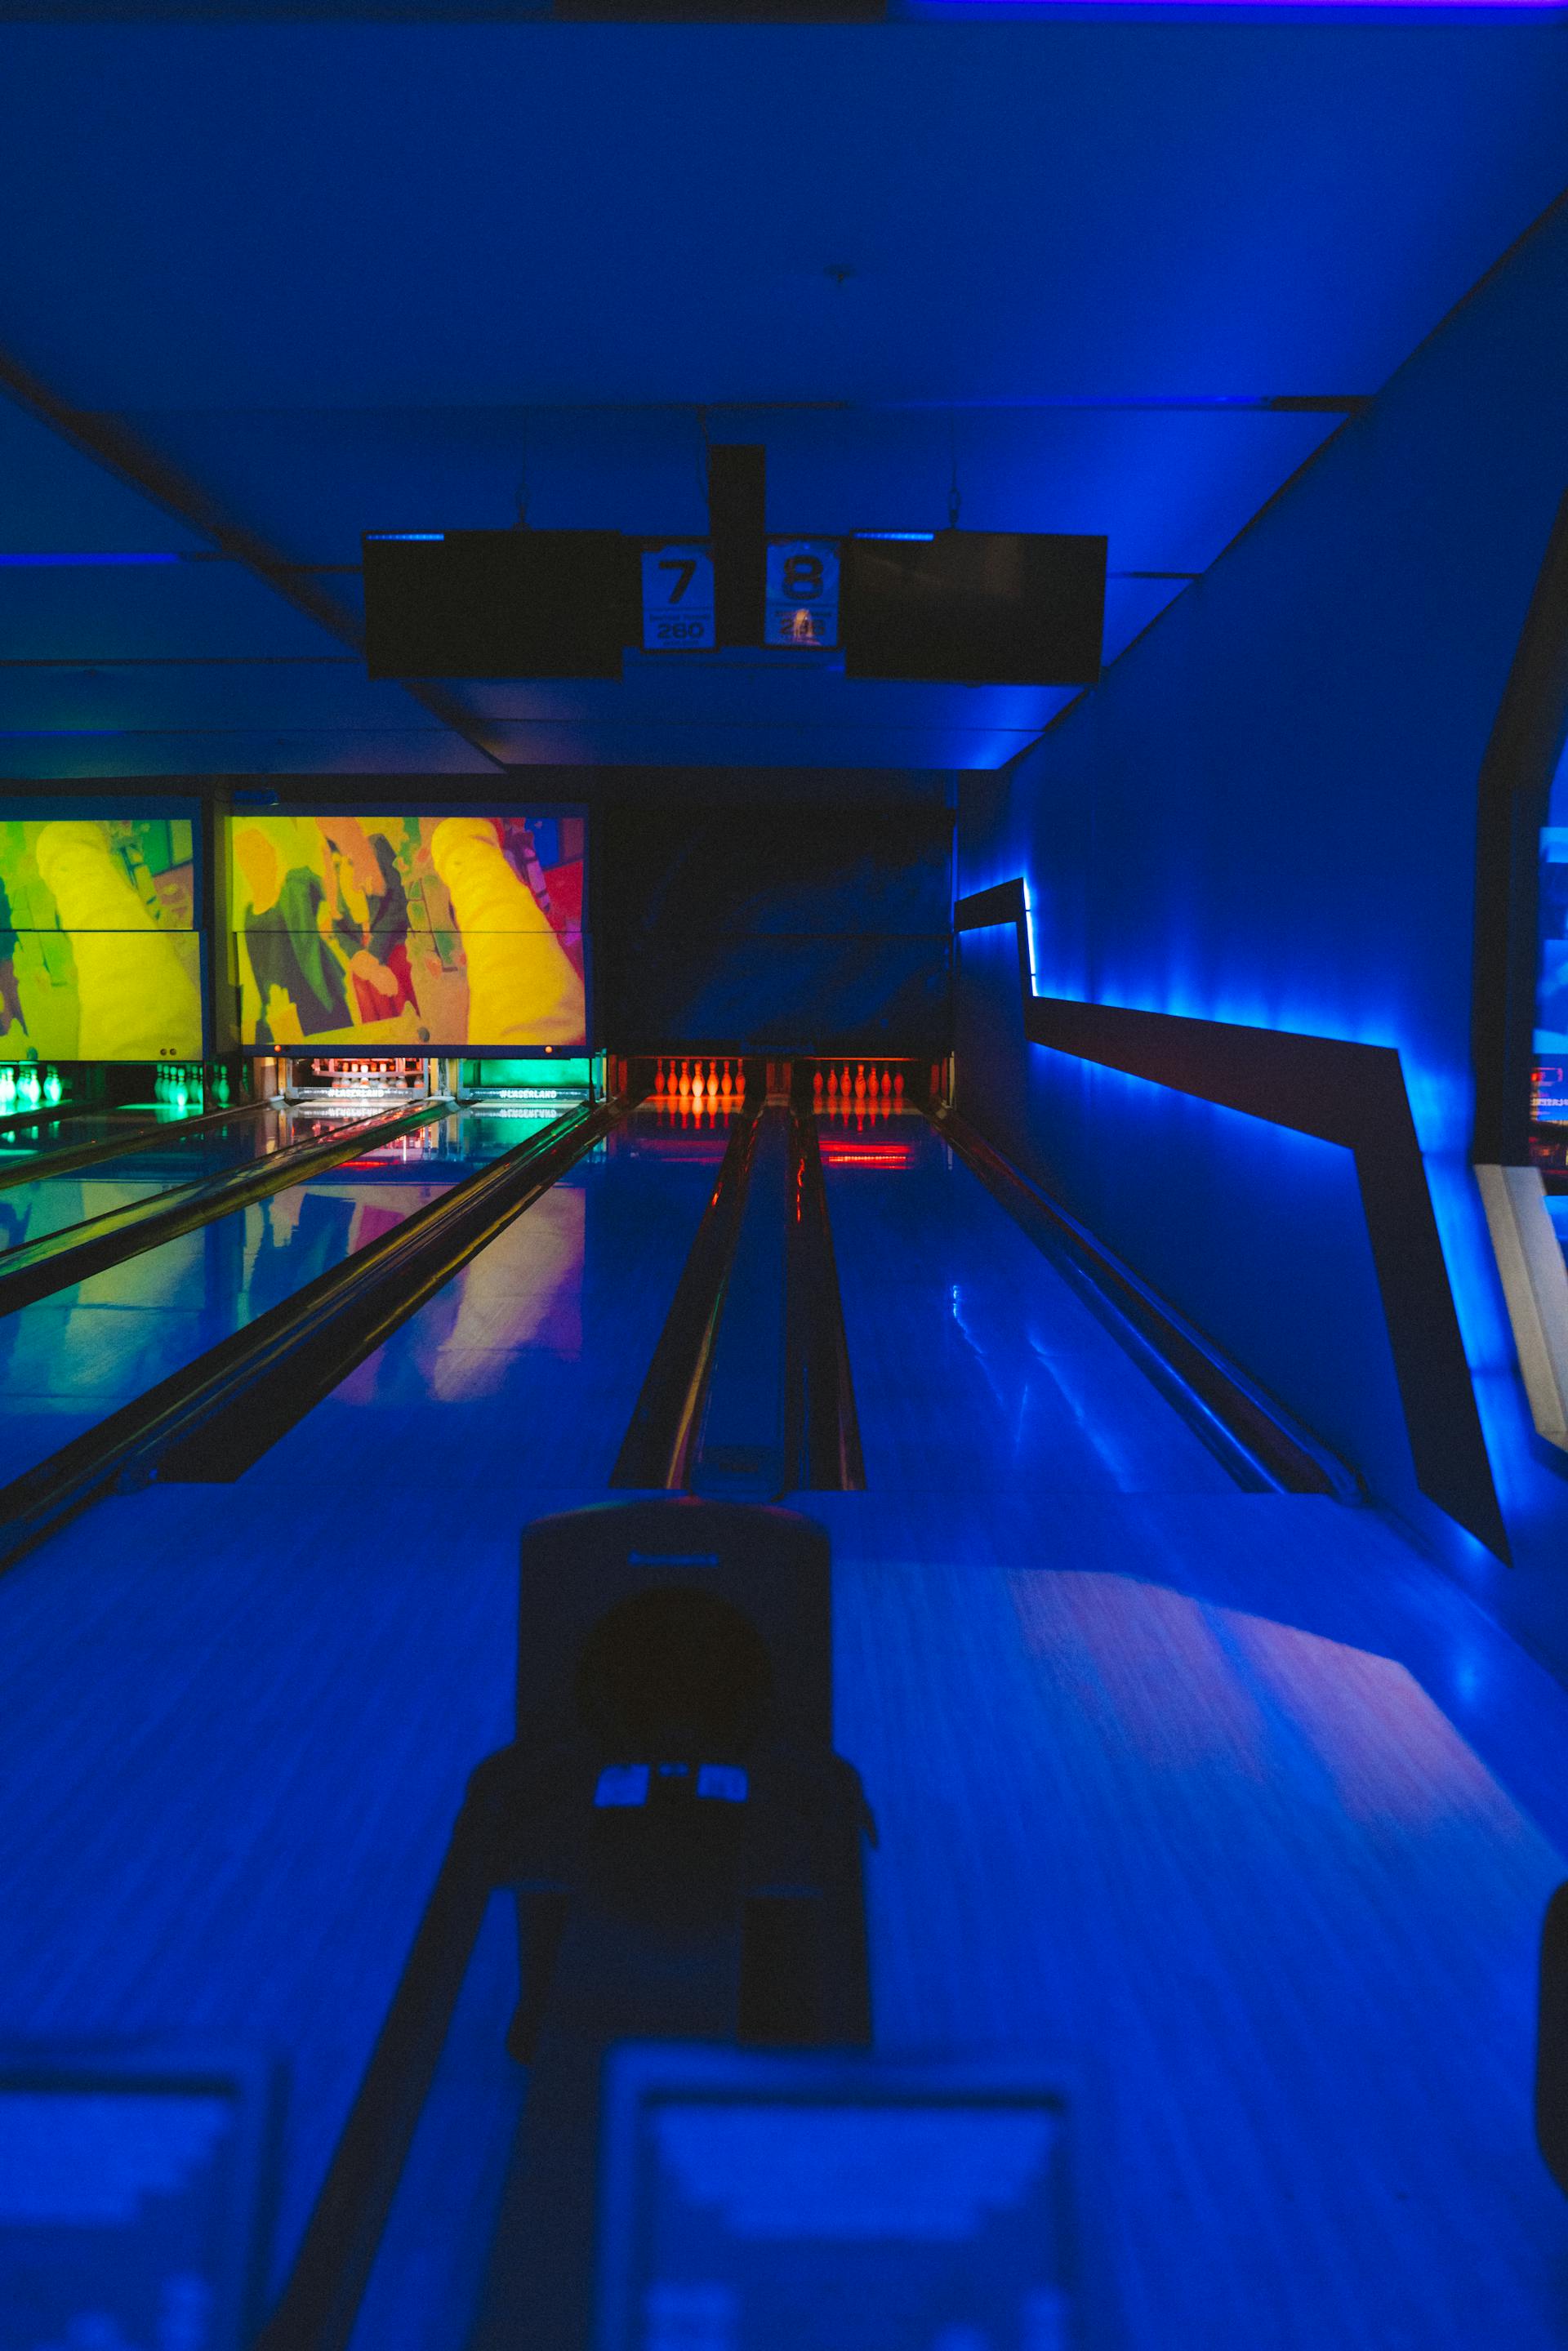 A bowling lane | Source: Pexels